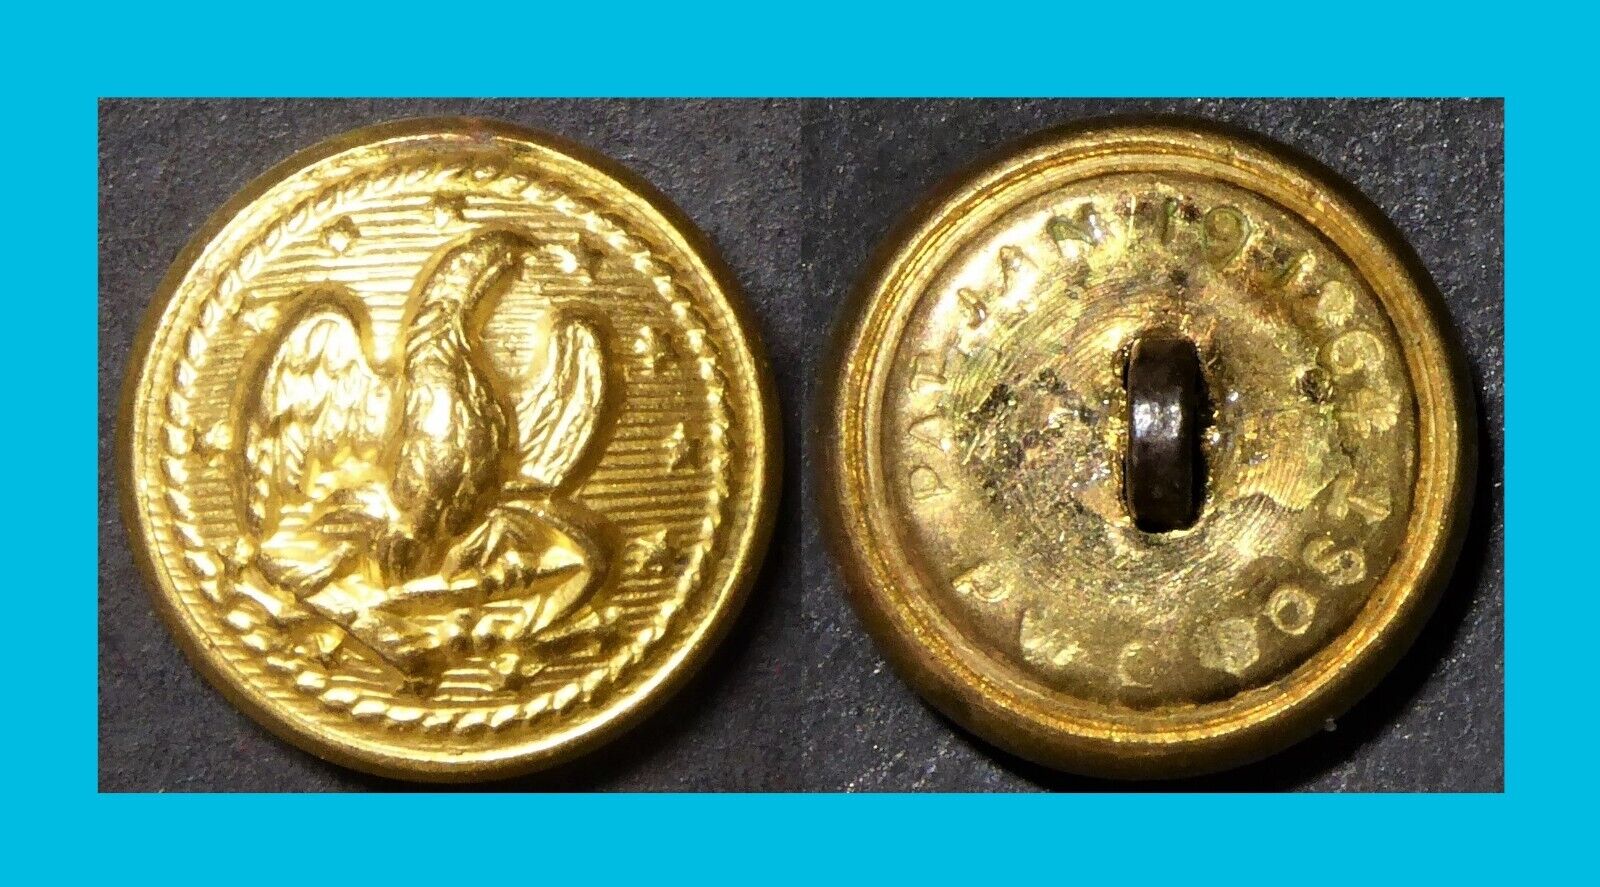 C1864-65, P.w.gengembre Boston (french Self-fastening Button Co) Civil War Cuff